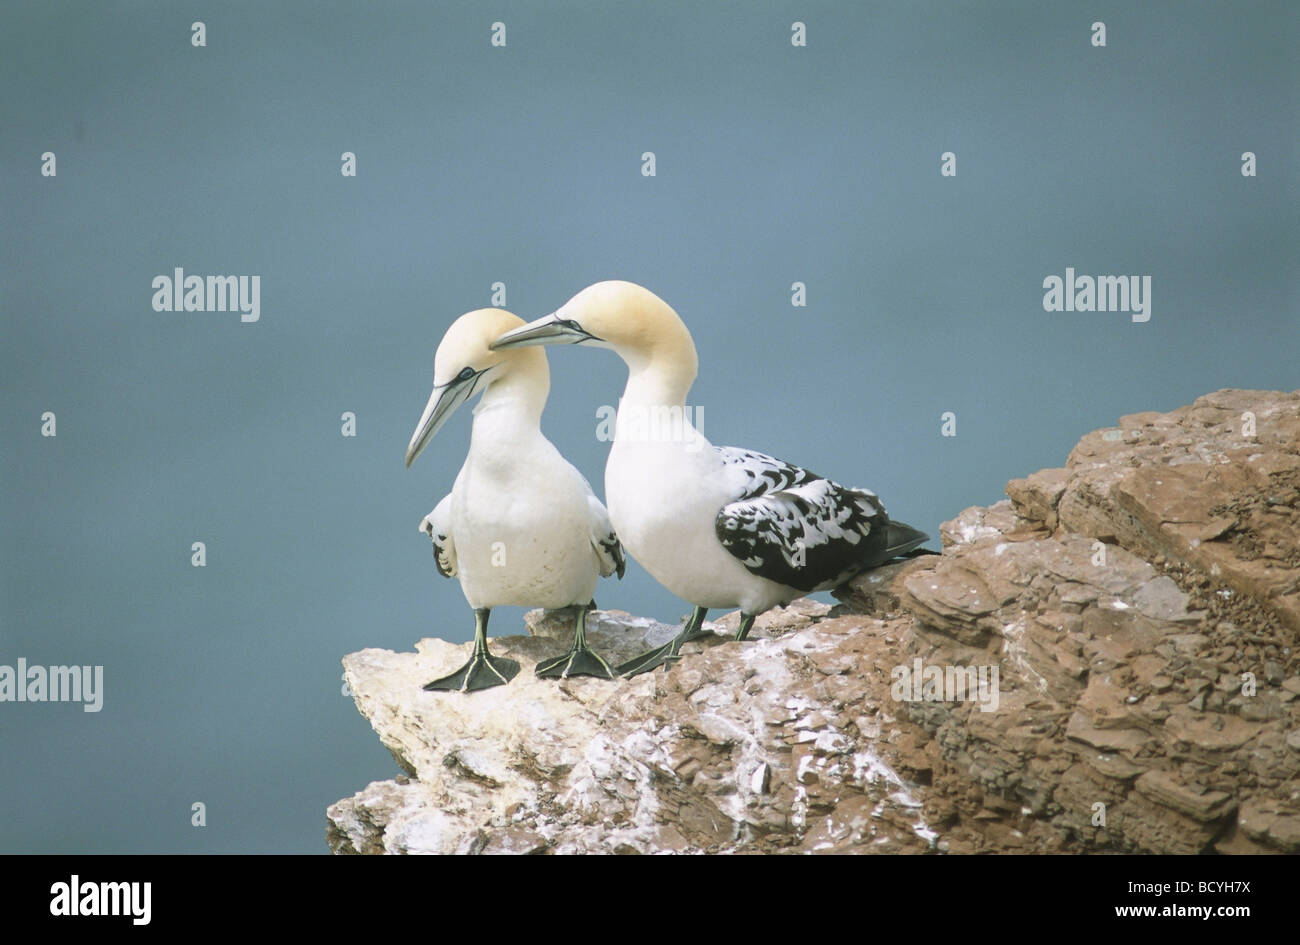 northern gannet / northern gannet Stock Photo